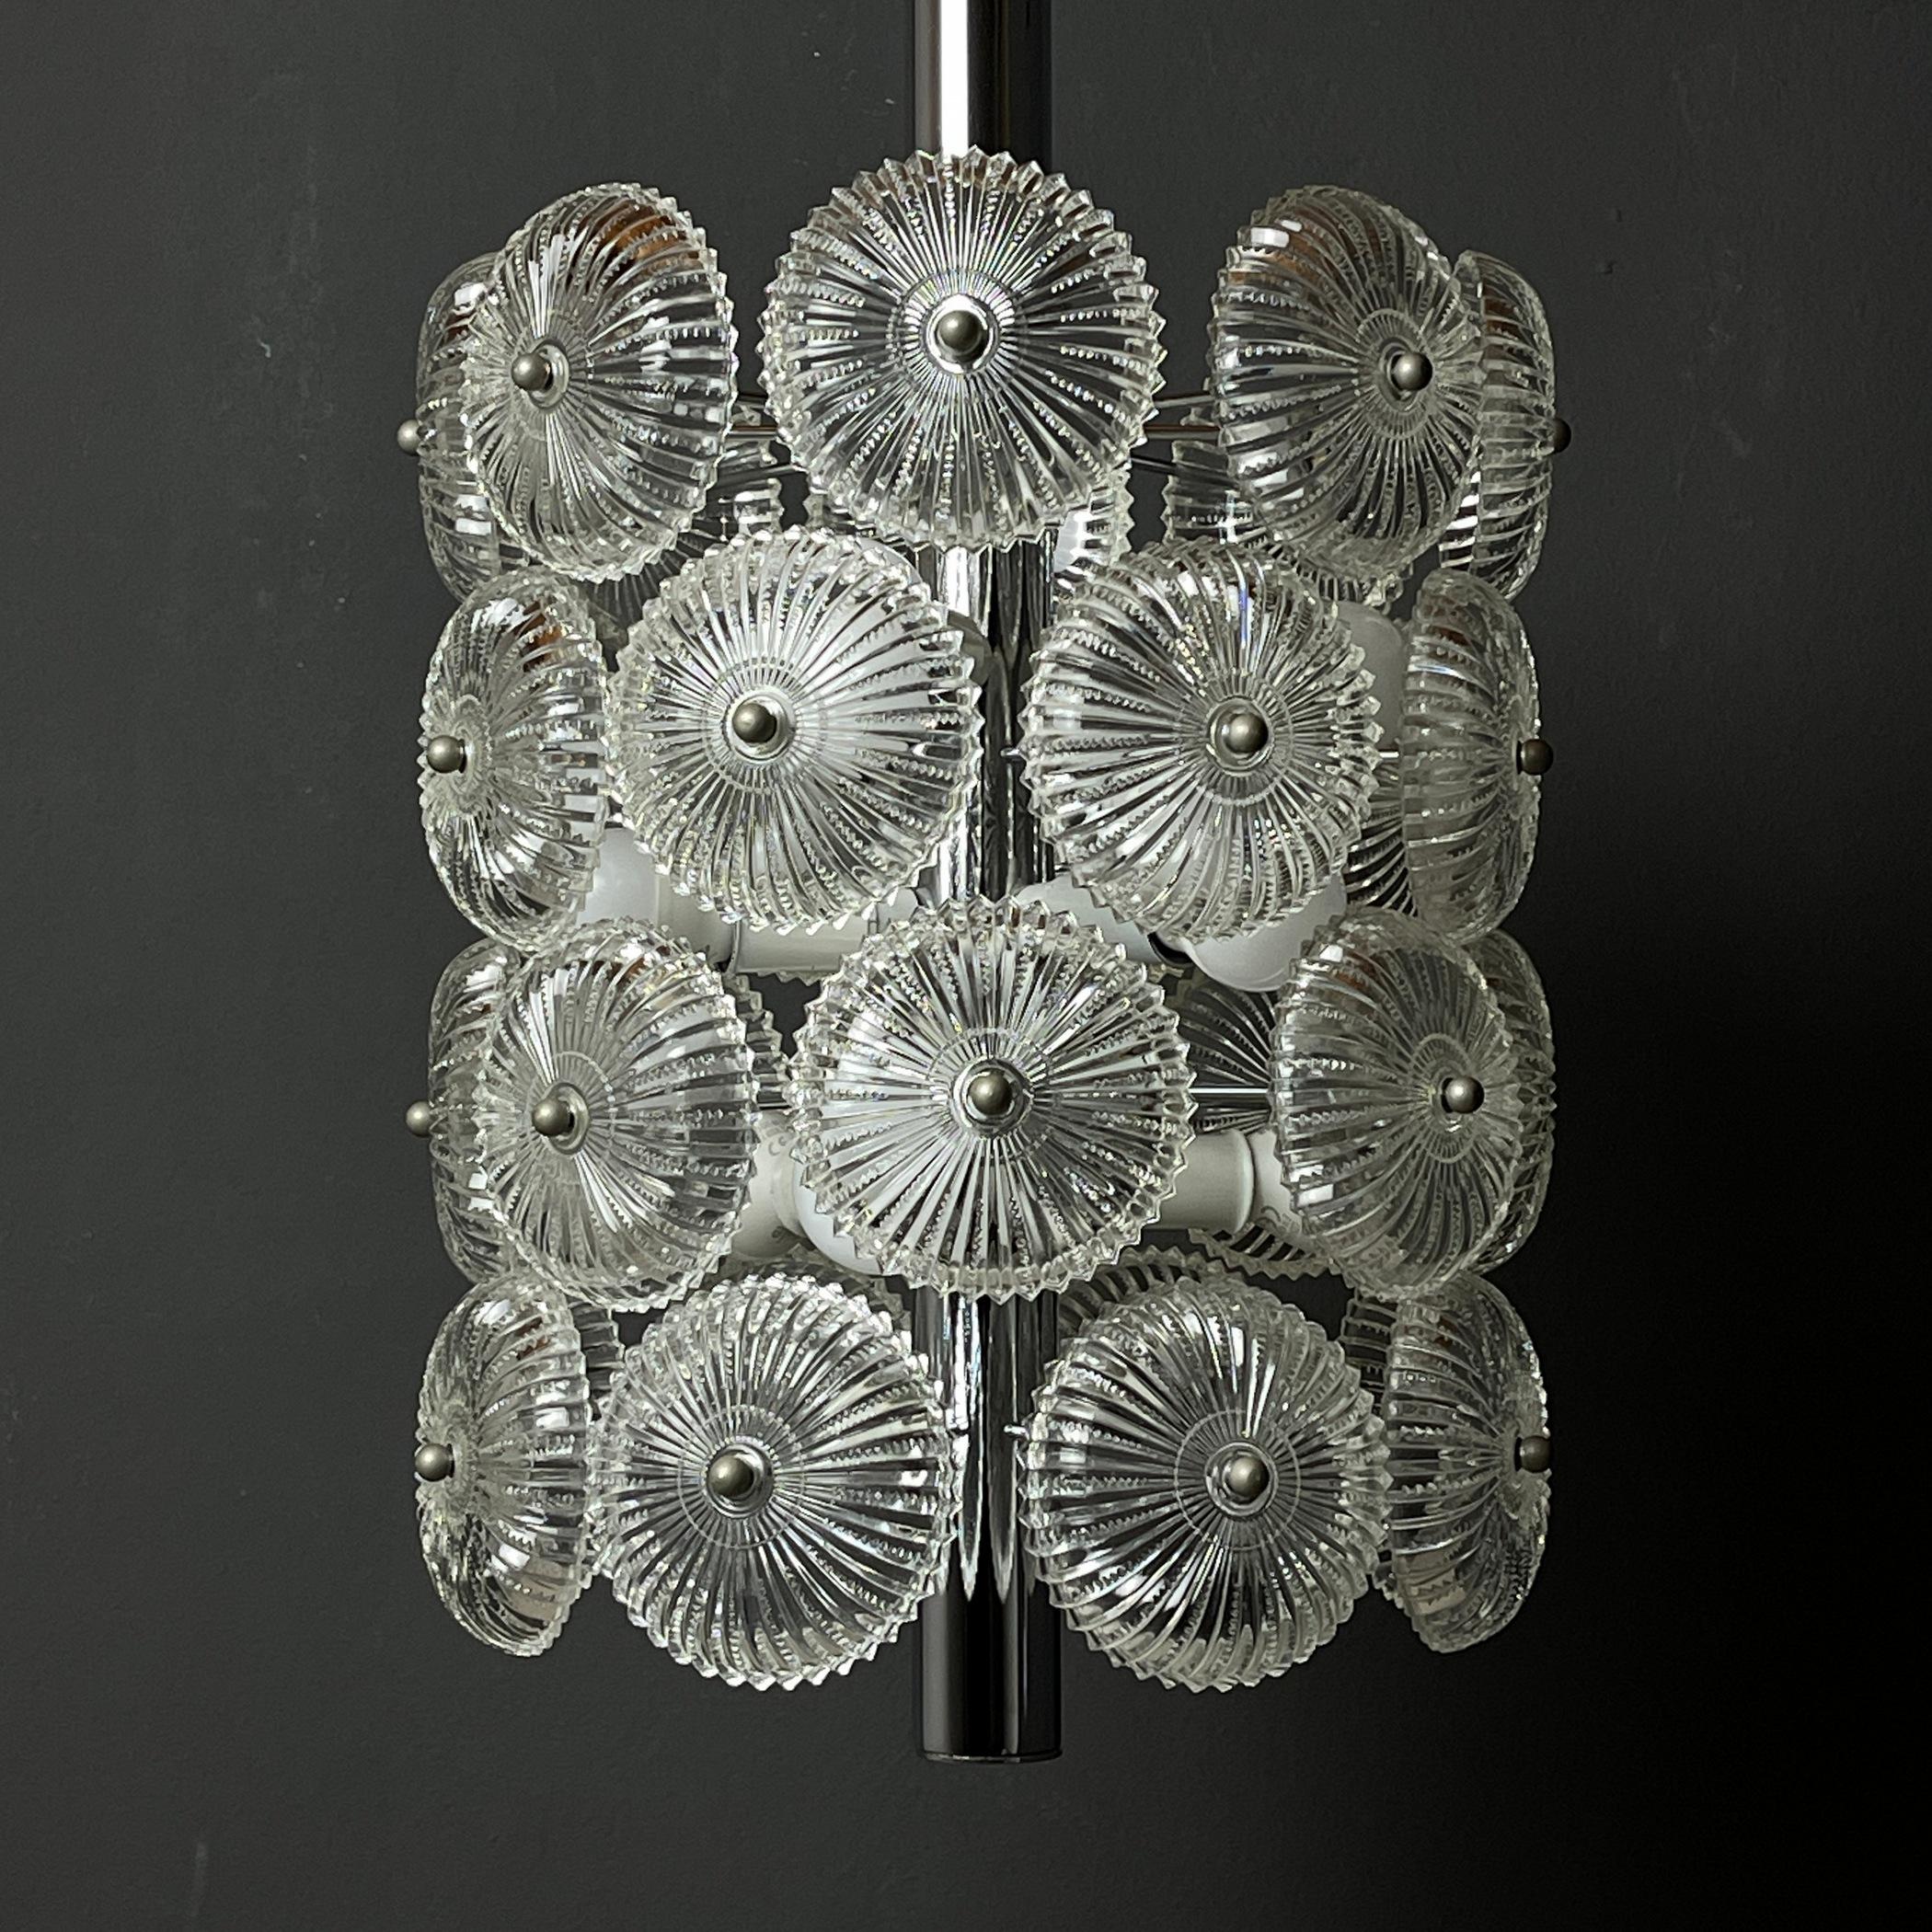 Einzigartiger Vintage-Kristalllüster Dandelion, hergestellt in Italien in den 1960er Jahren.
Vierstöckiger Metallsockel und 32 Glaselemente. Der Kronleuchter hat ein einfaches, klares Design, das ihn zur perfekten Wahl macht, um jeden Raum des